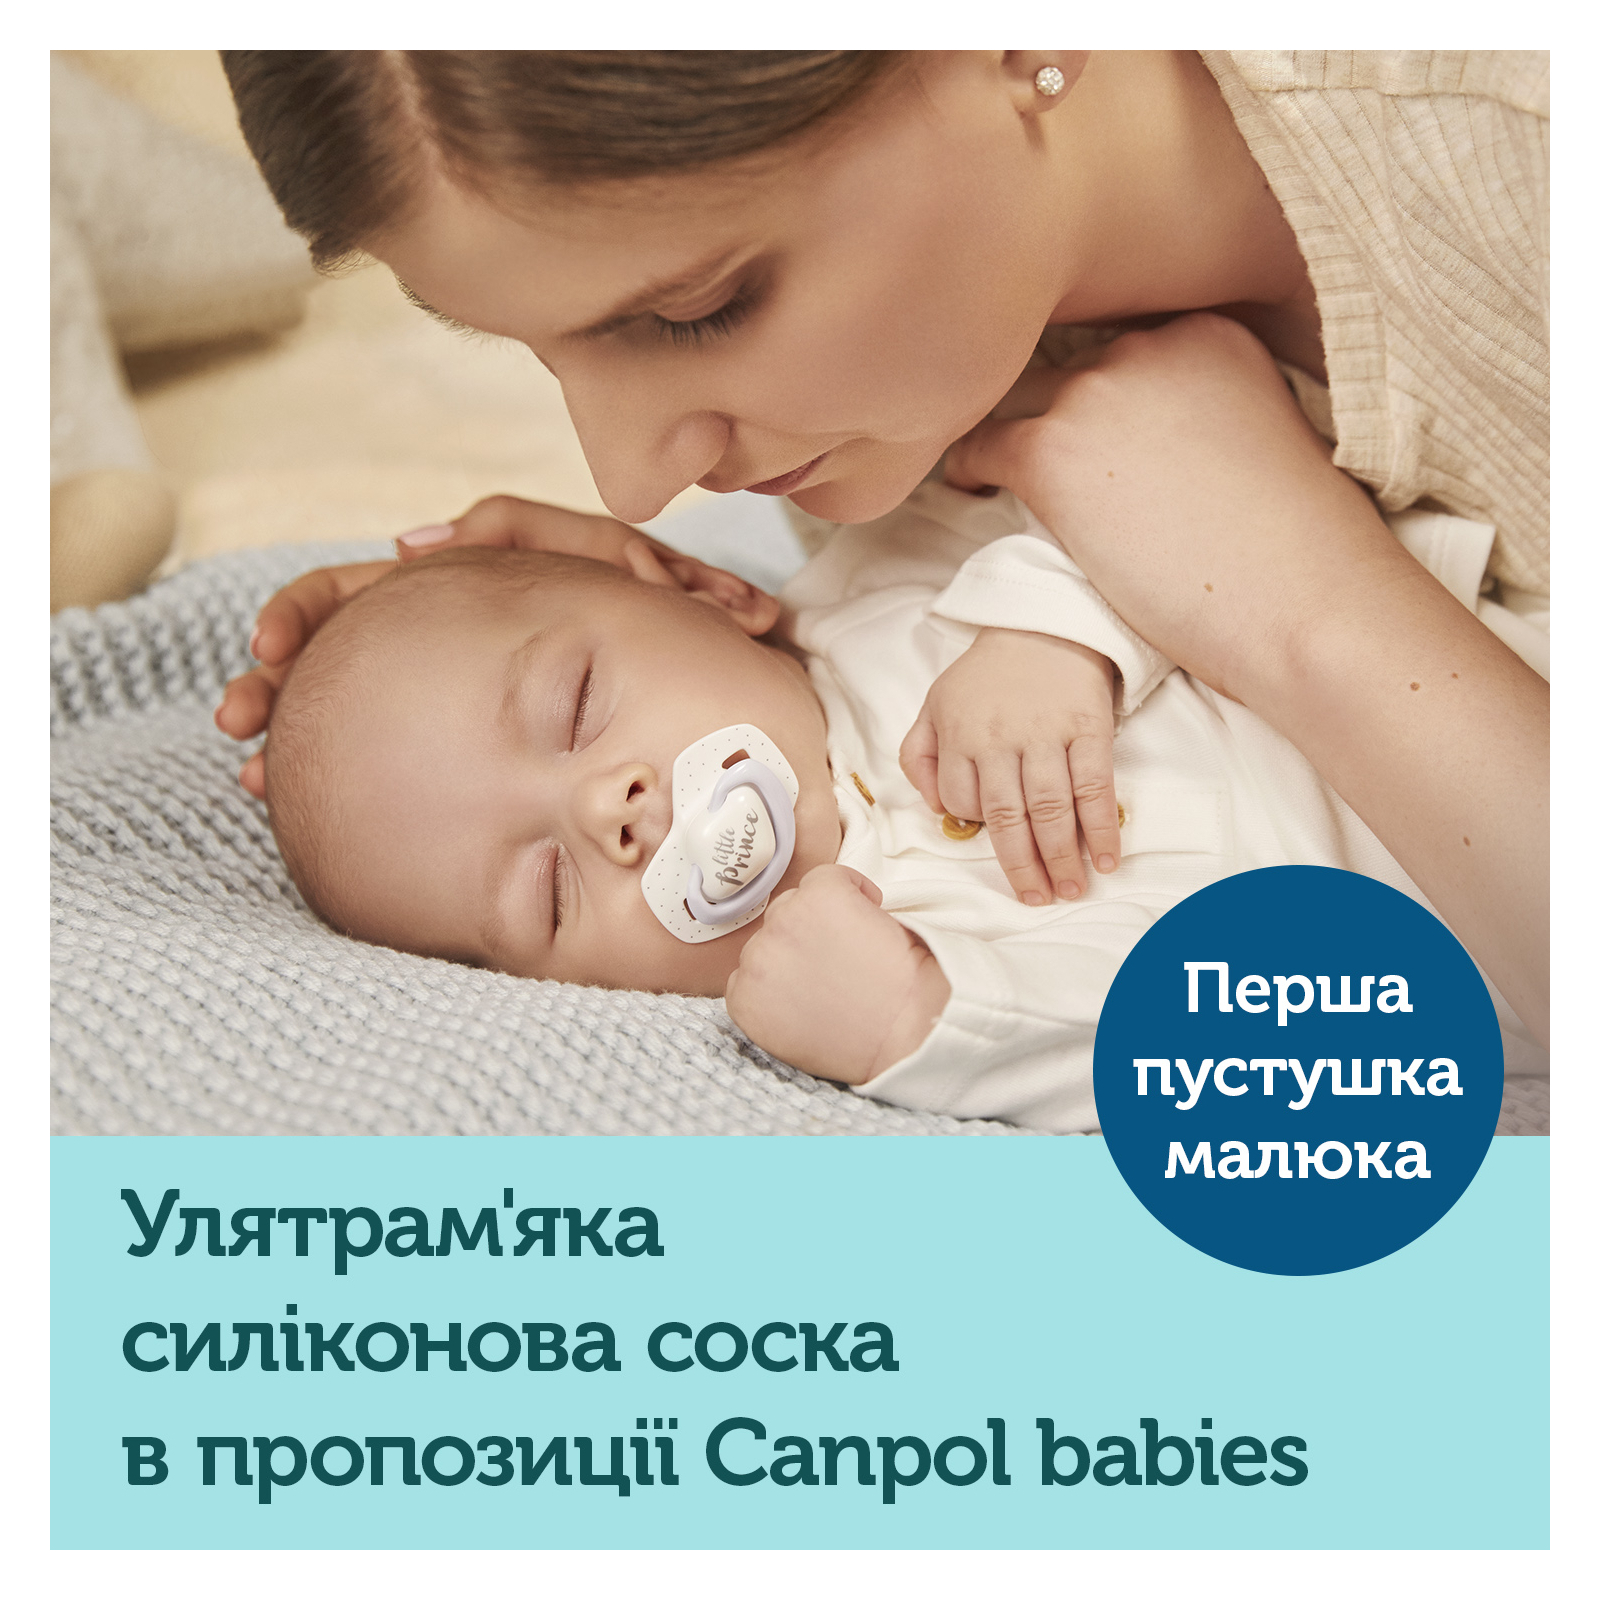 Набор для кормления новорожденных Canpol babies Royal Baby BOY (0295) изображение 5